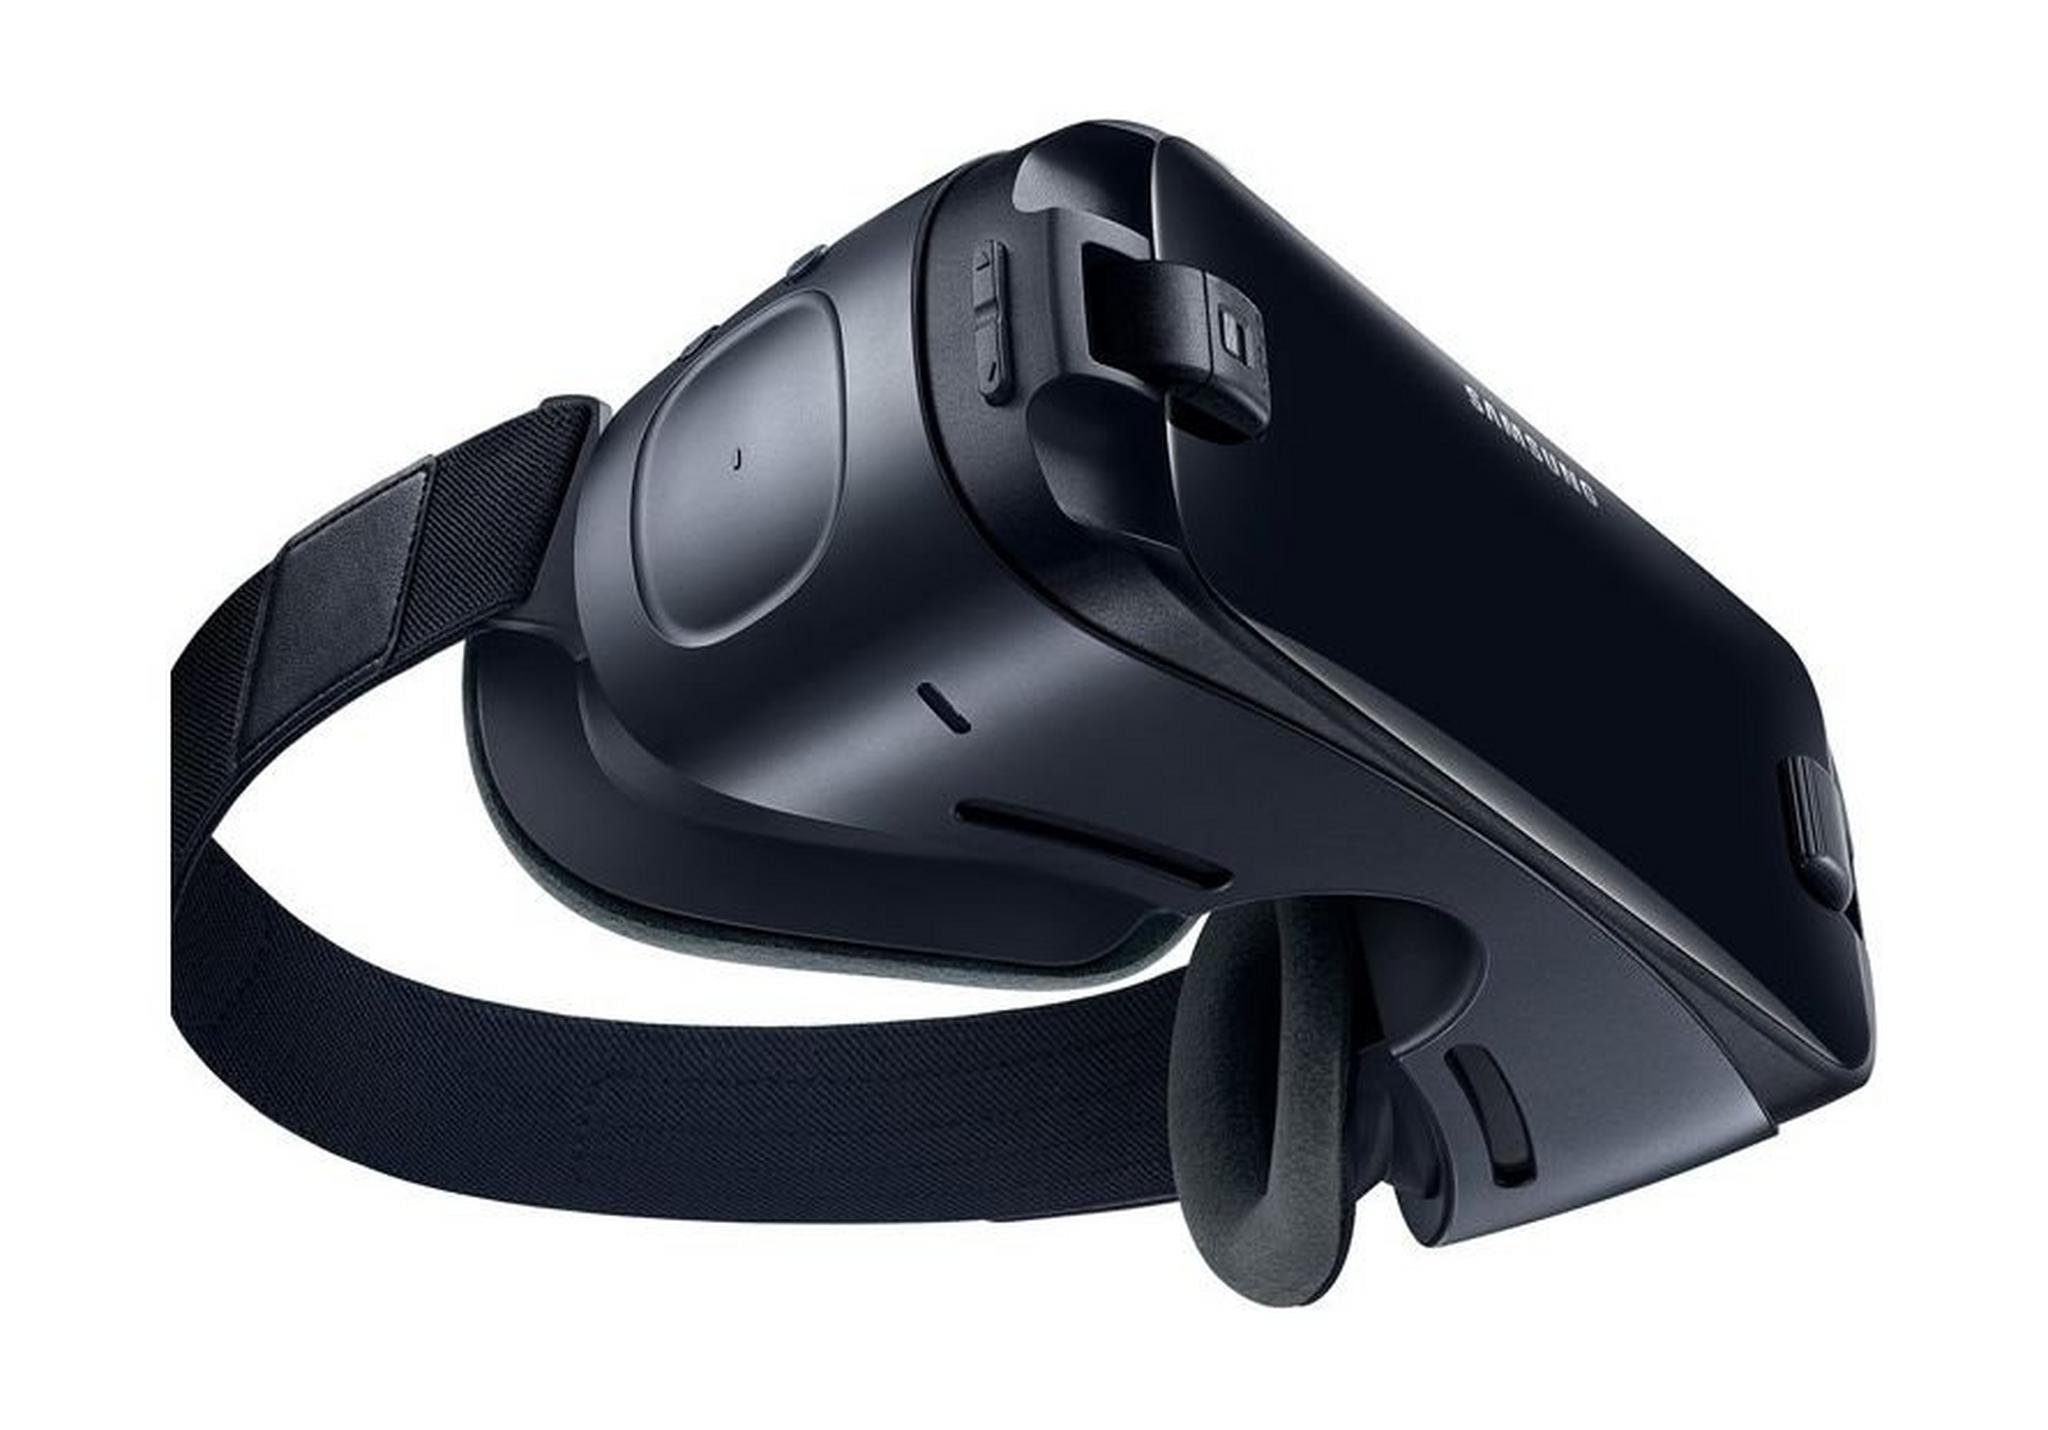 نظارة الواقع الافتراضي سامسونج للهواتف الذكية مع وحدة تحكم – أسود (SM-R324NZAAXSG)